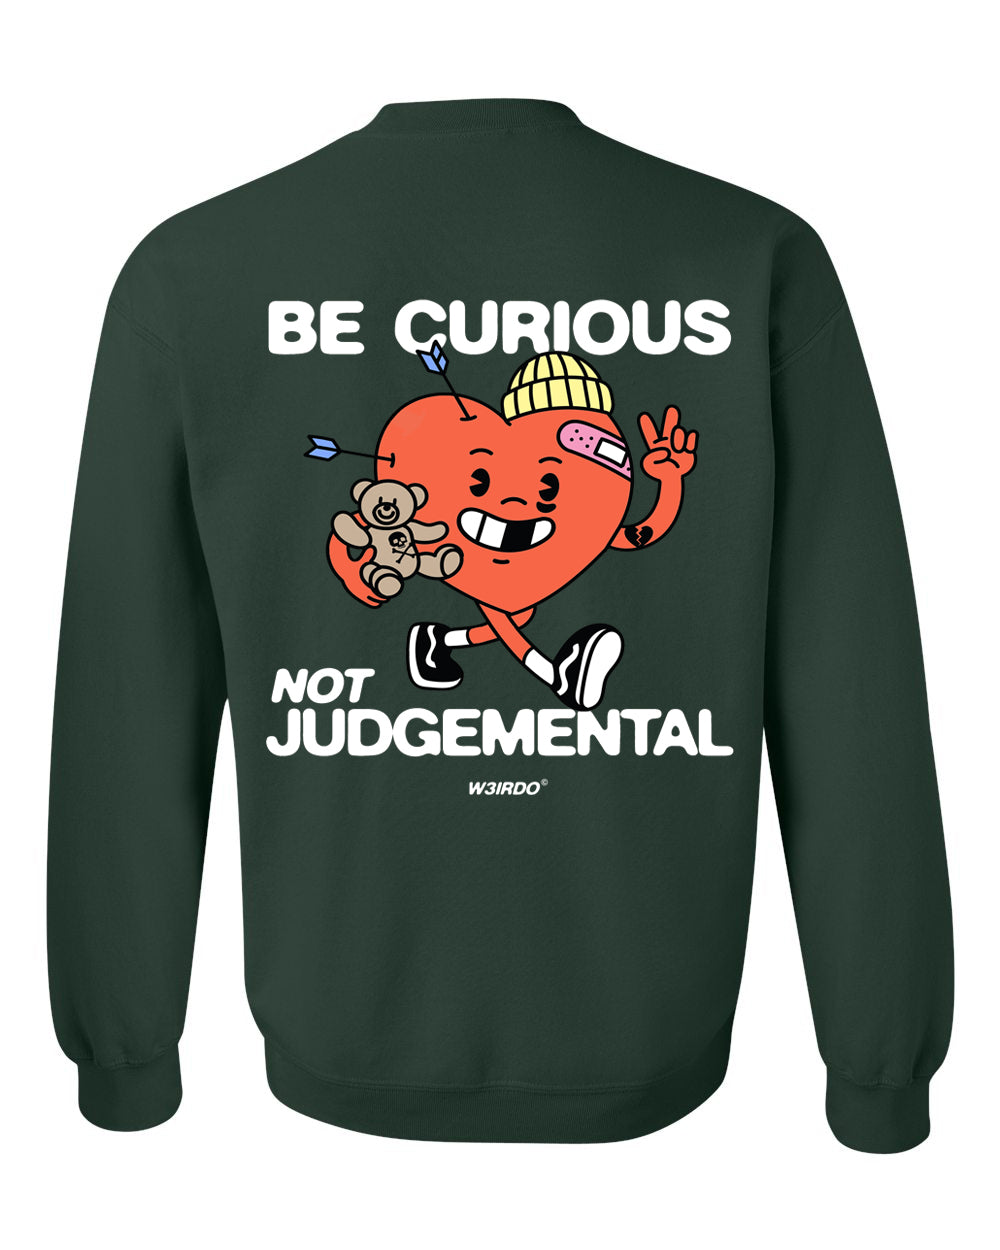 BE CURIOUS, NOT JUDGEMENTAL crewneck